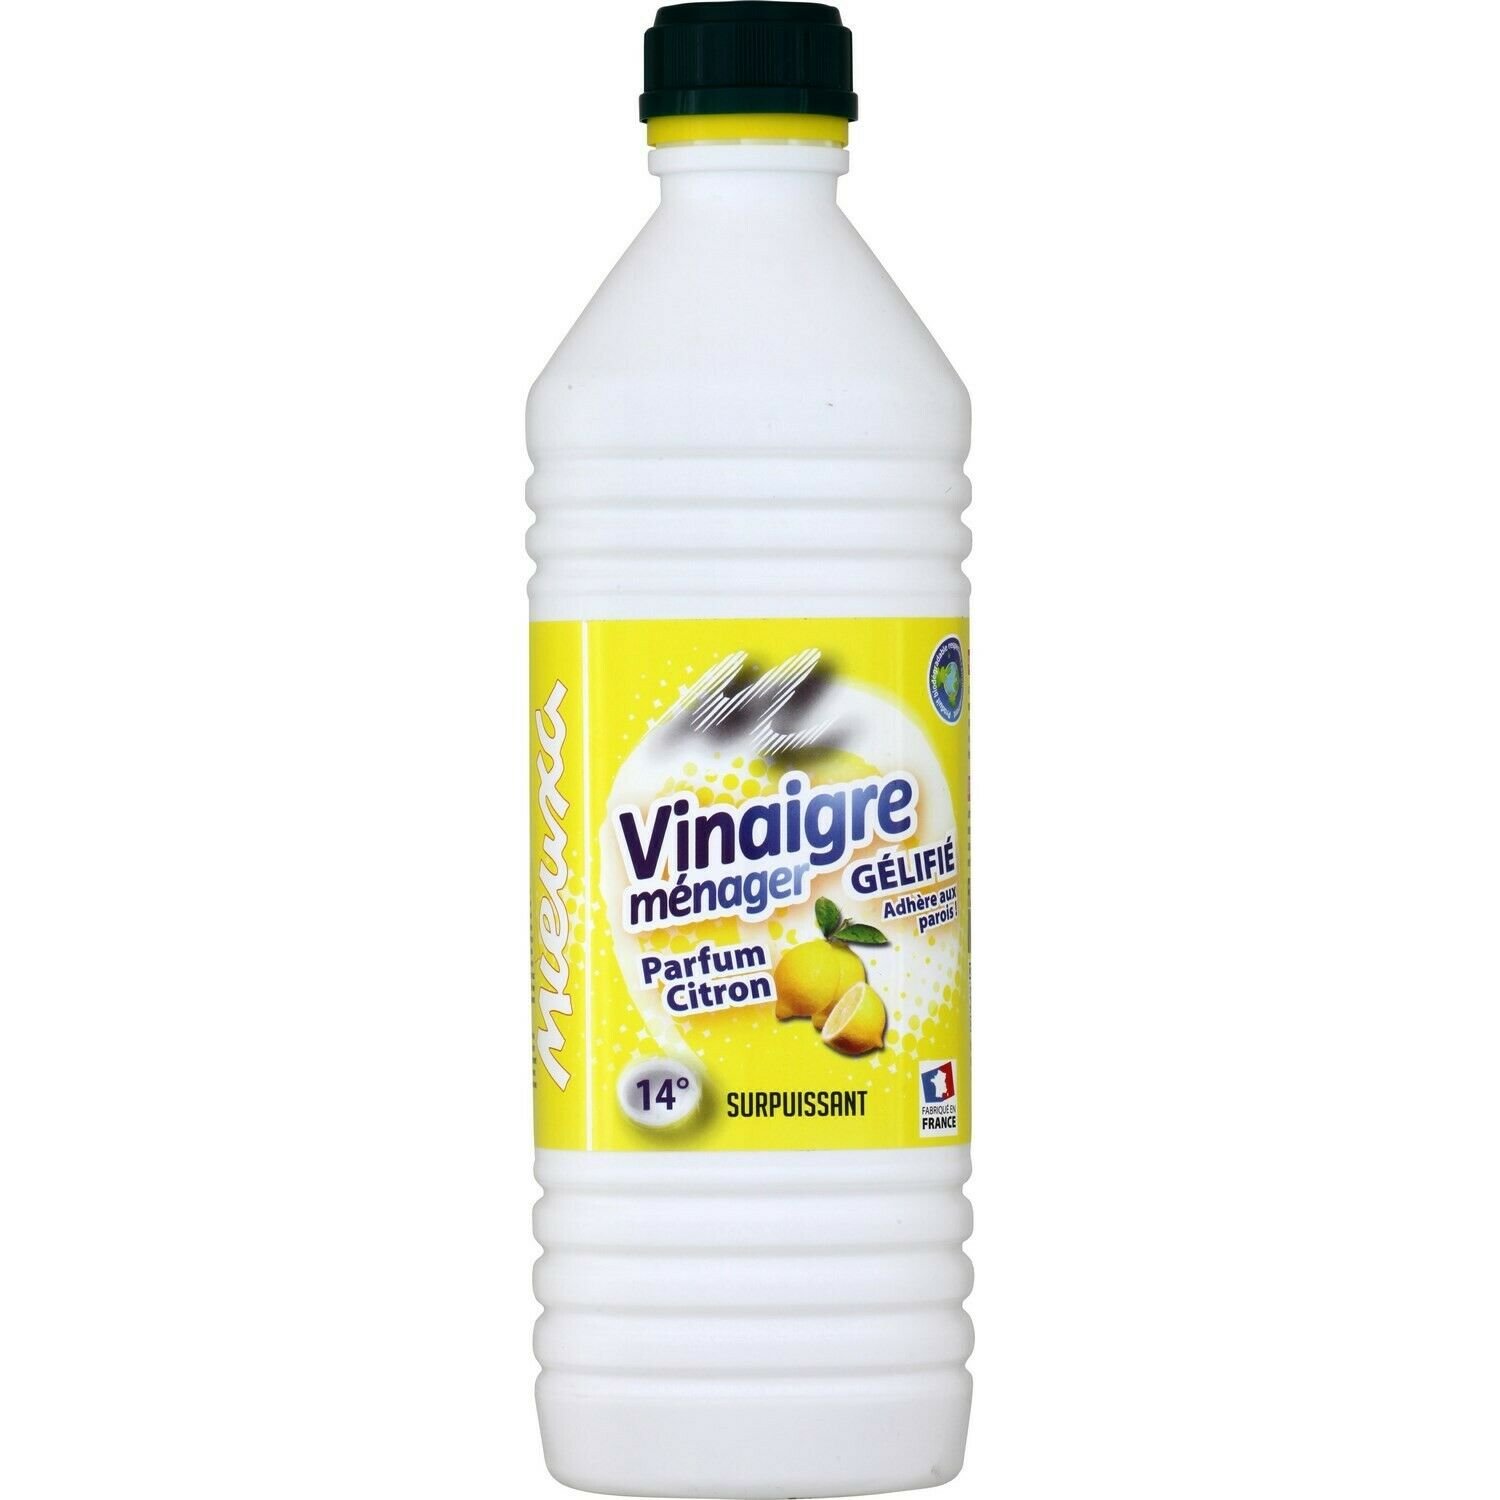 lot 3 Household cleanser gelled household vinegar, lemon MIEUXA 1 liter